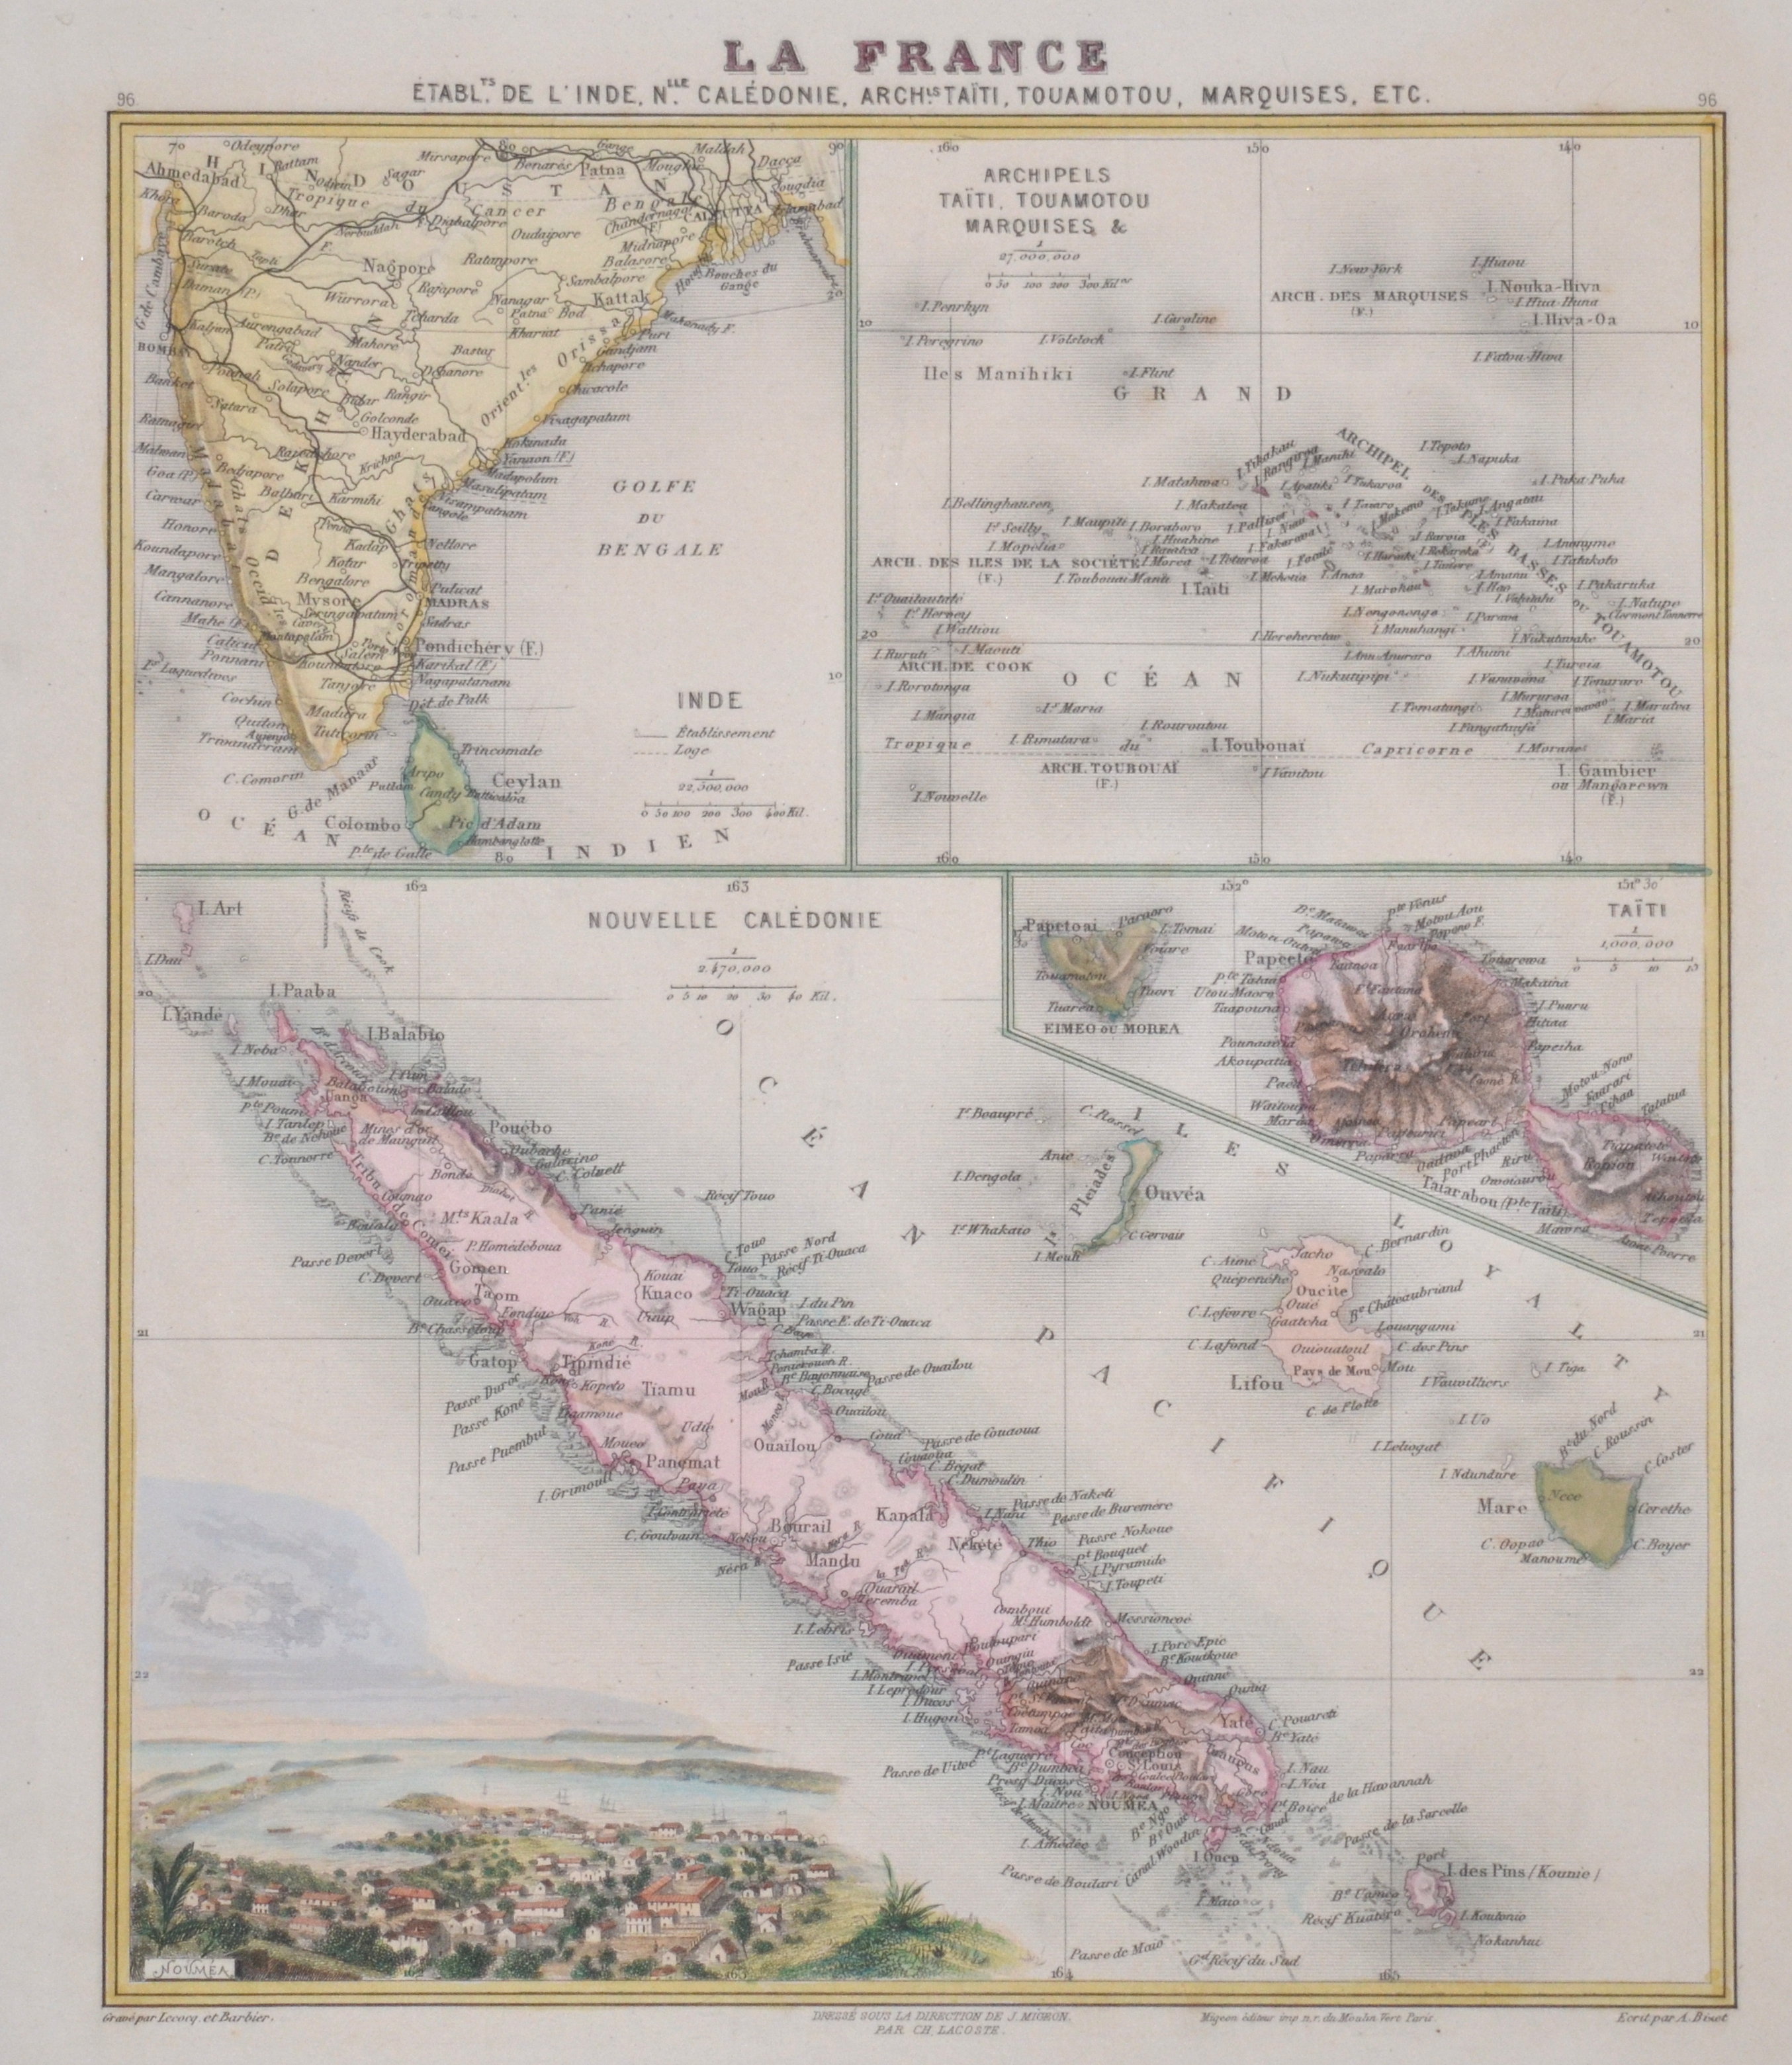 Migeon J. La France. Inde, Archipels Taiti, Touamotou Marquises, Nouvelle Caledonie, Taiti